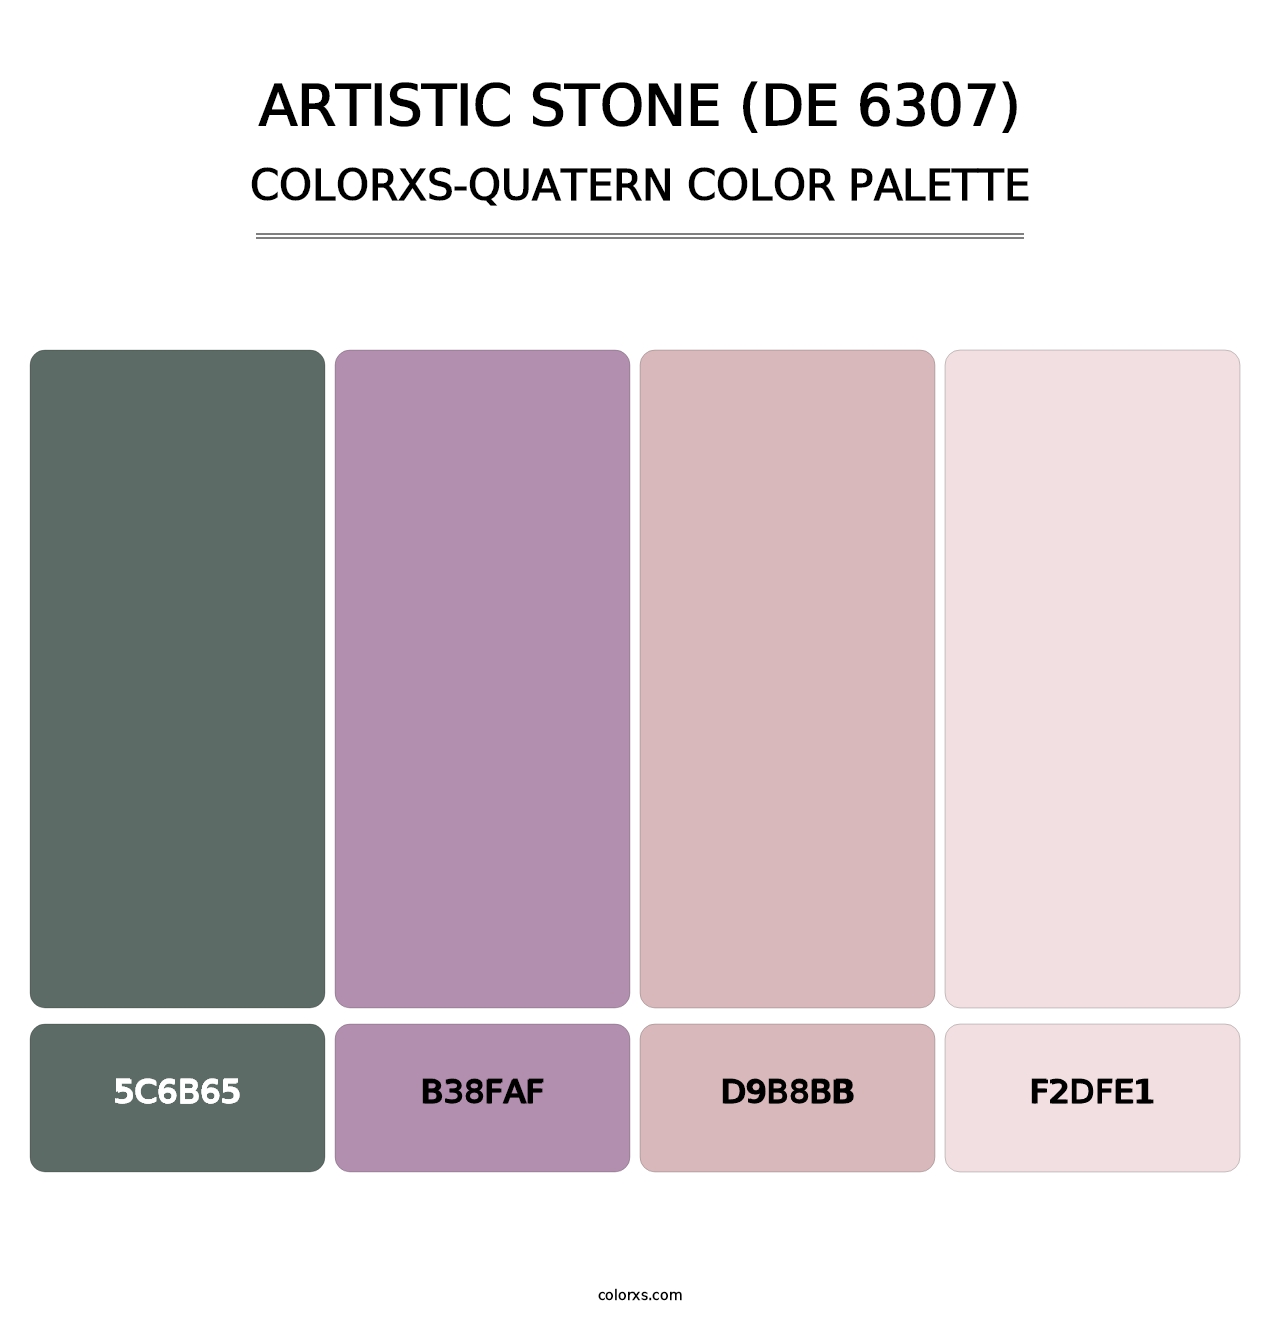 Artistic Stone (DE 6307) - Colorxs Quatern Palette